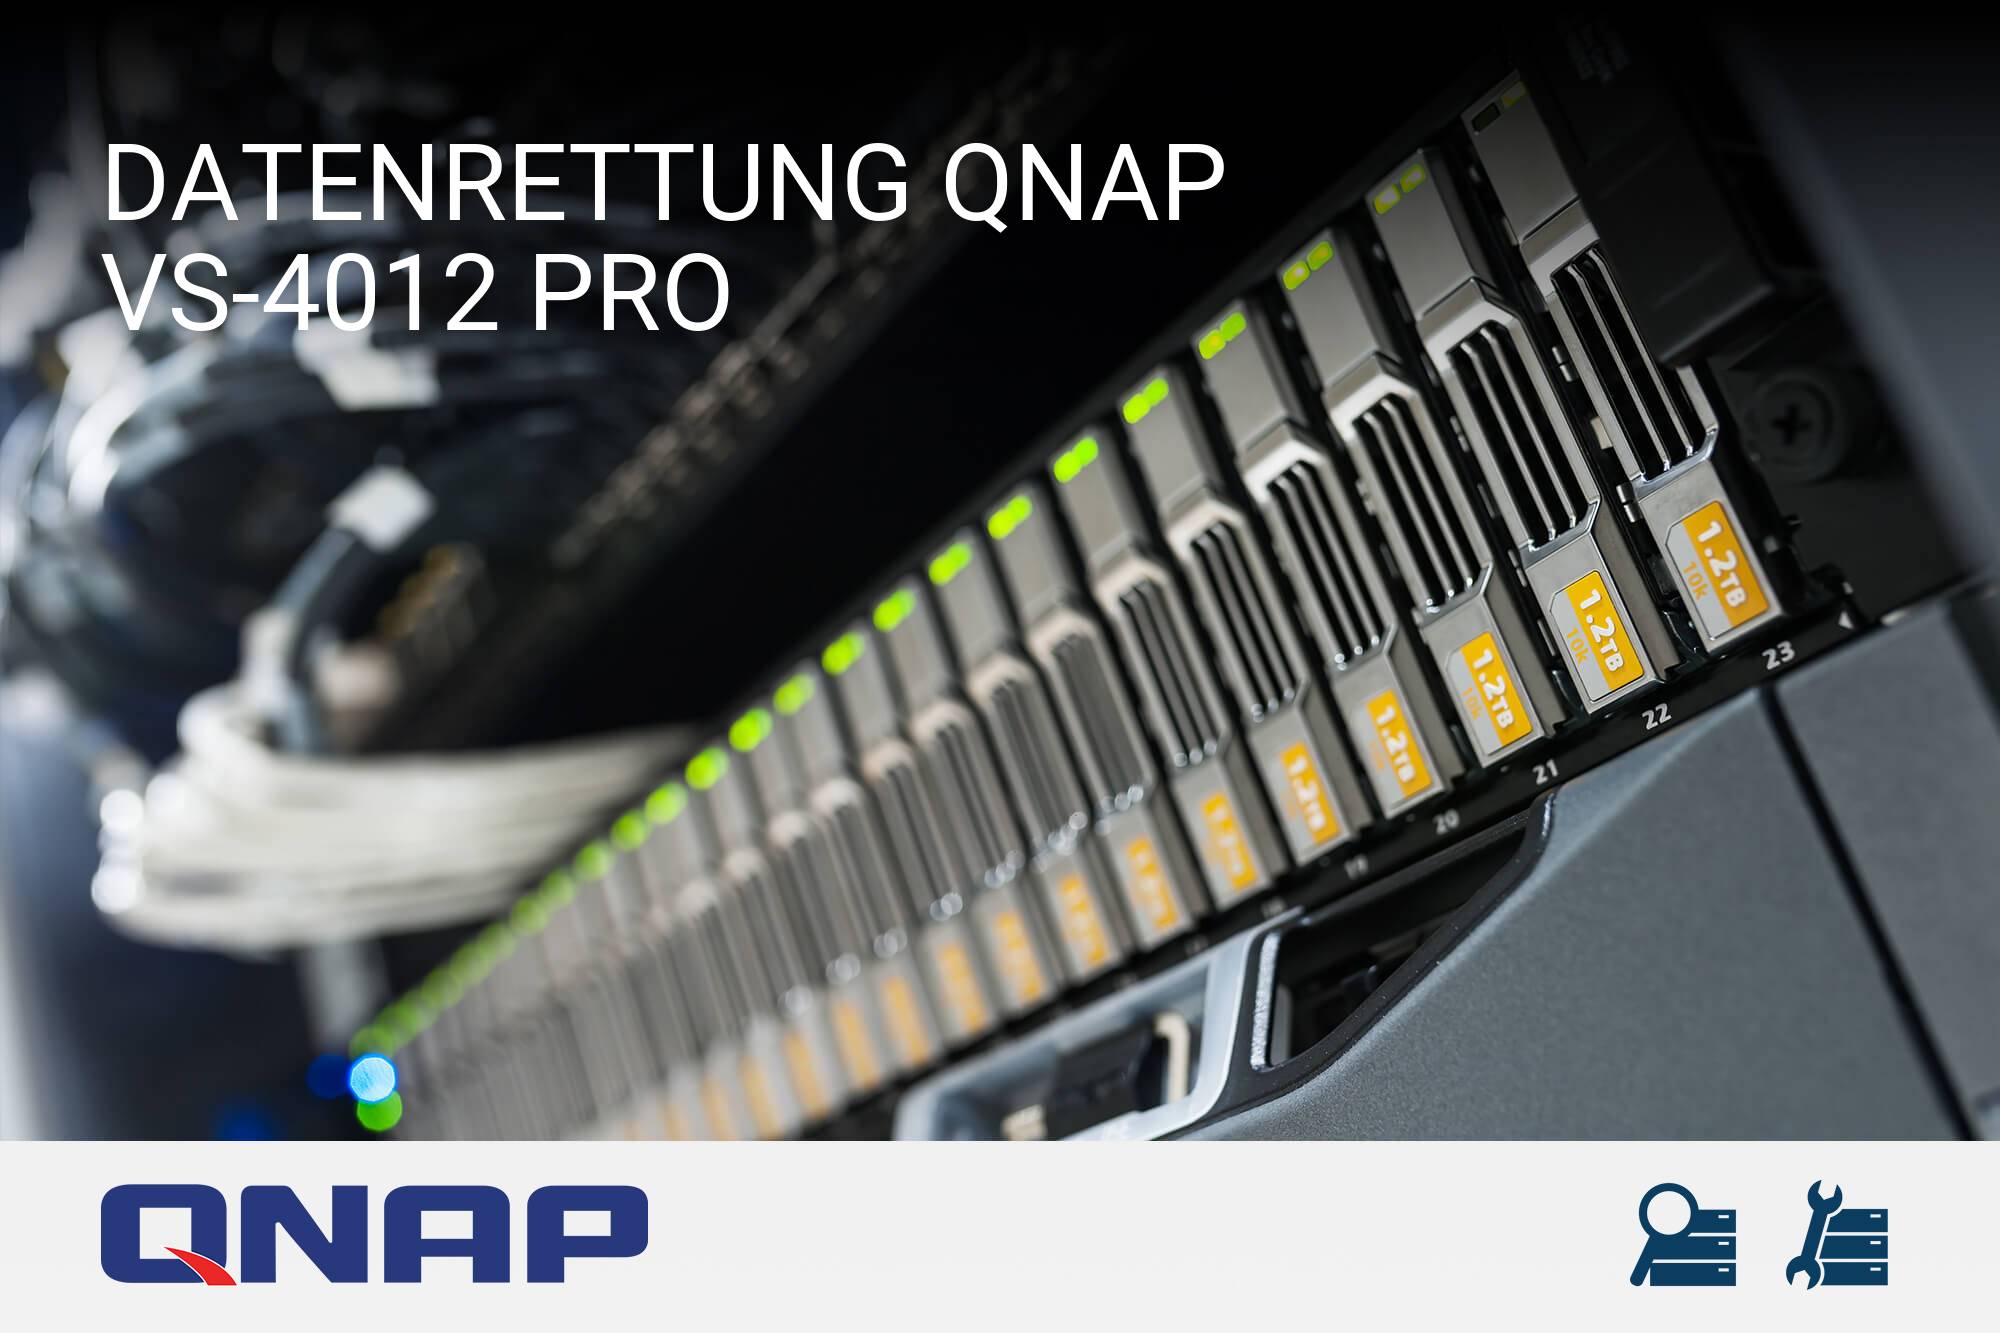 QNAP VS-4012 Pro